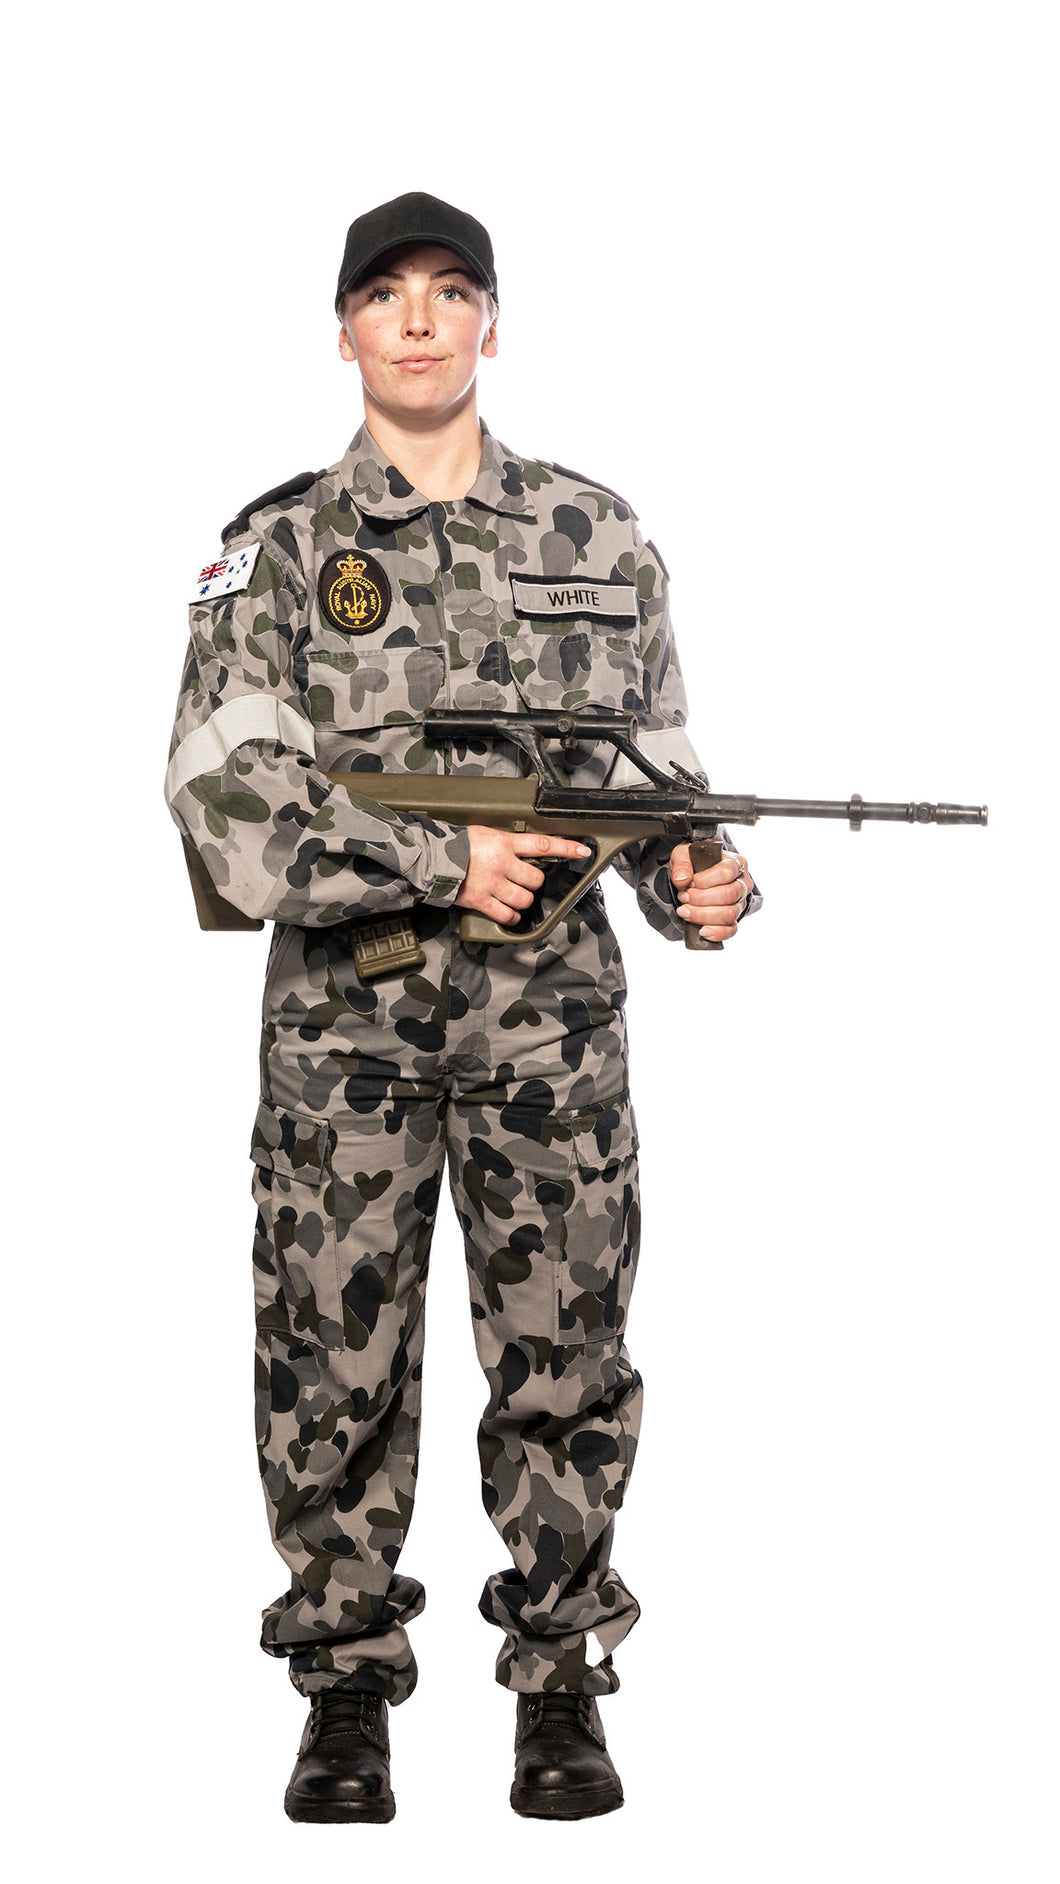 Aus Navy uniform